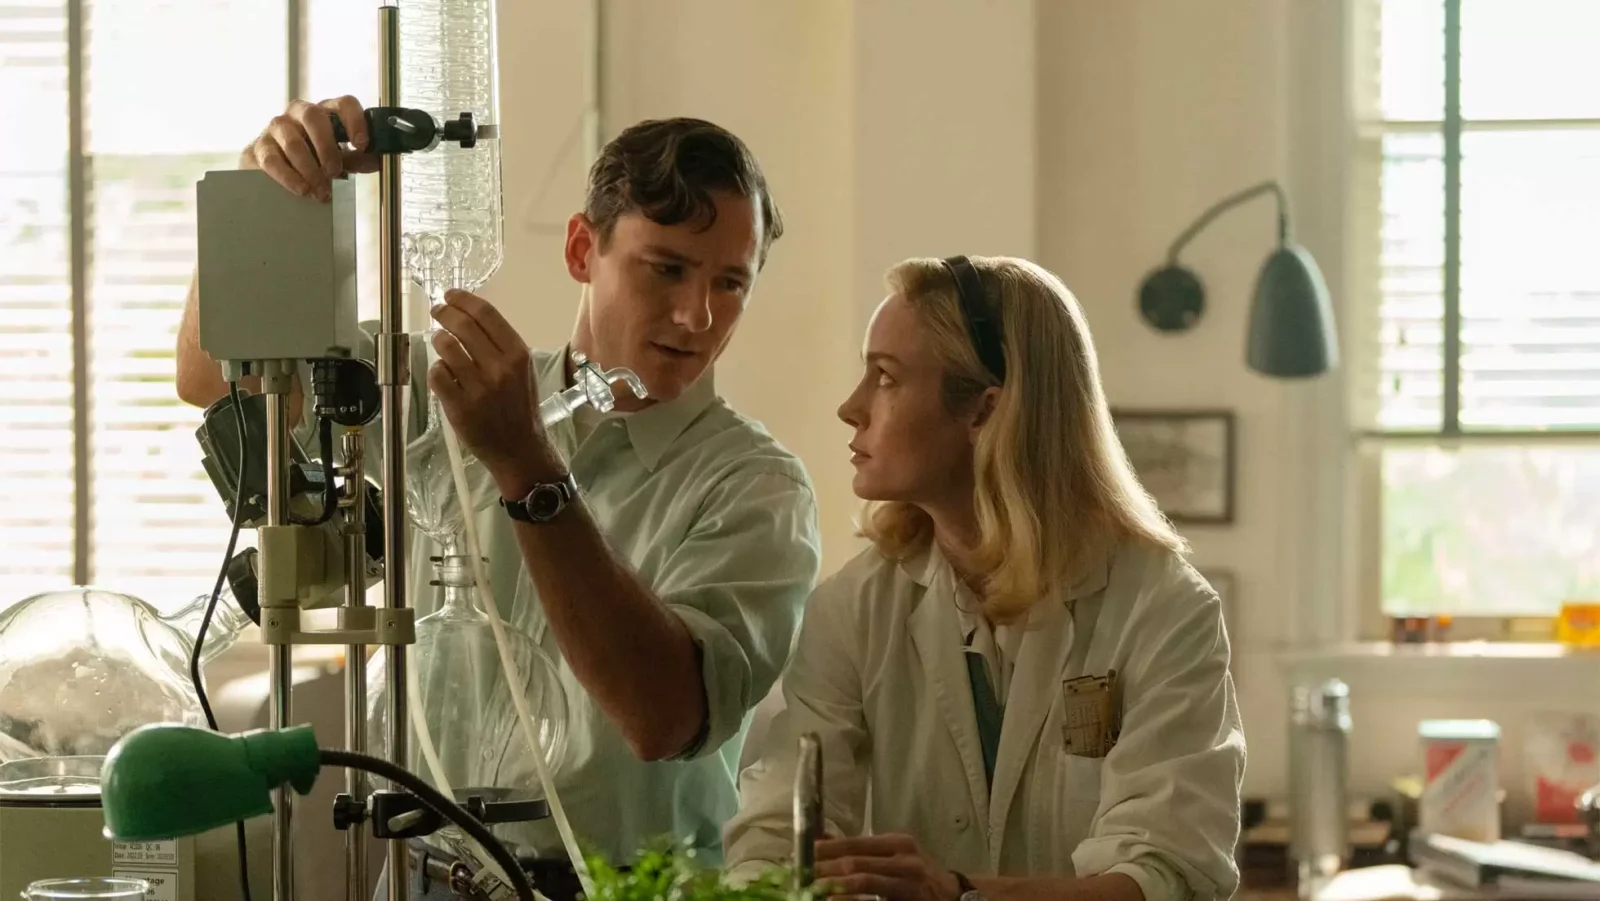 Lezioni di Chimica, ecco il teaser trailer della serie Apple Tv+ con Brie Larson